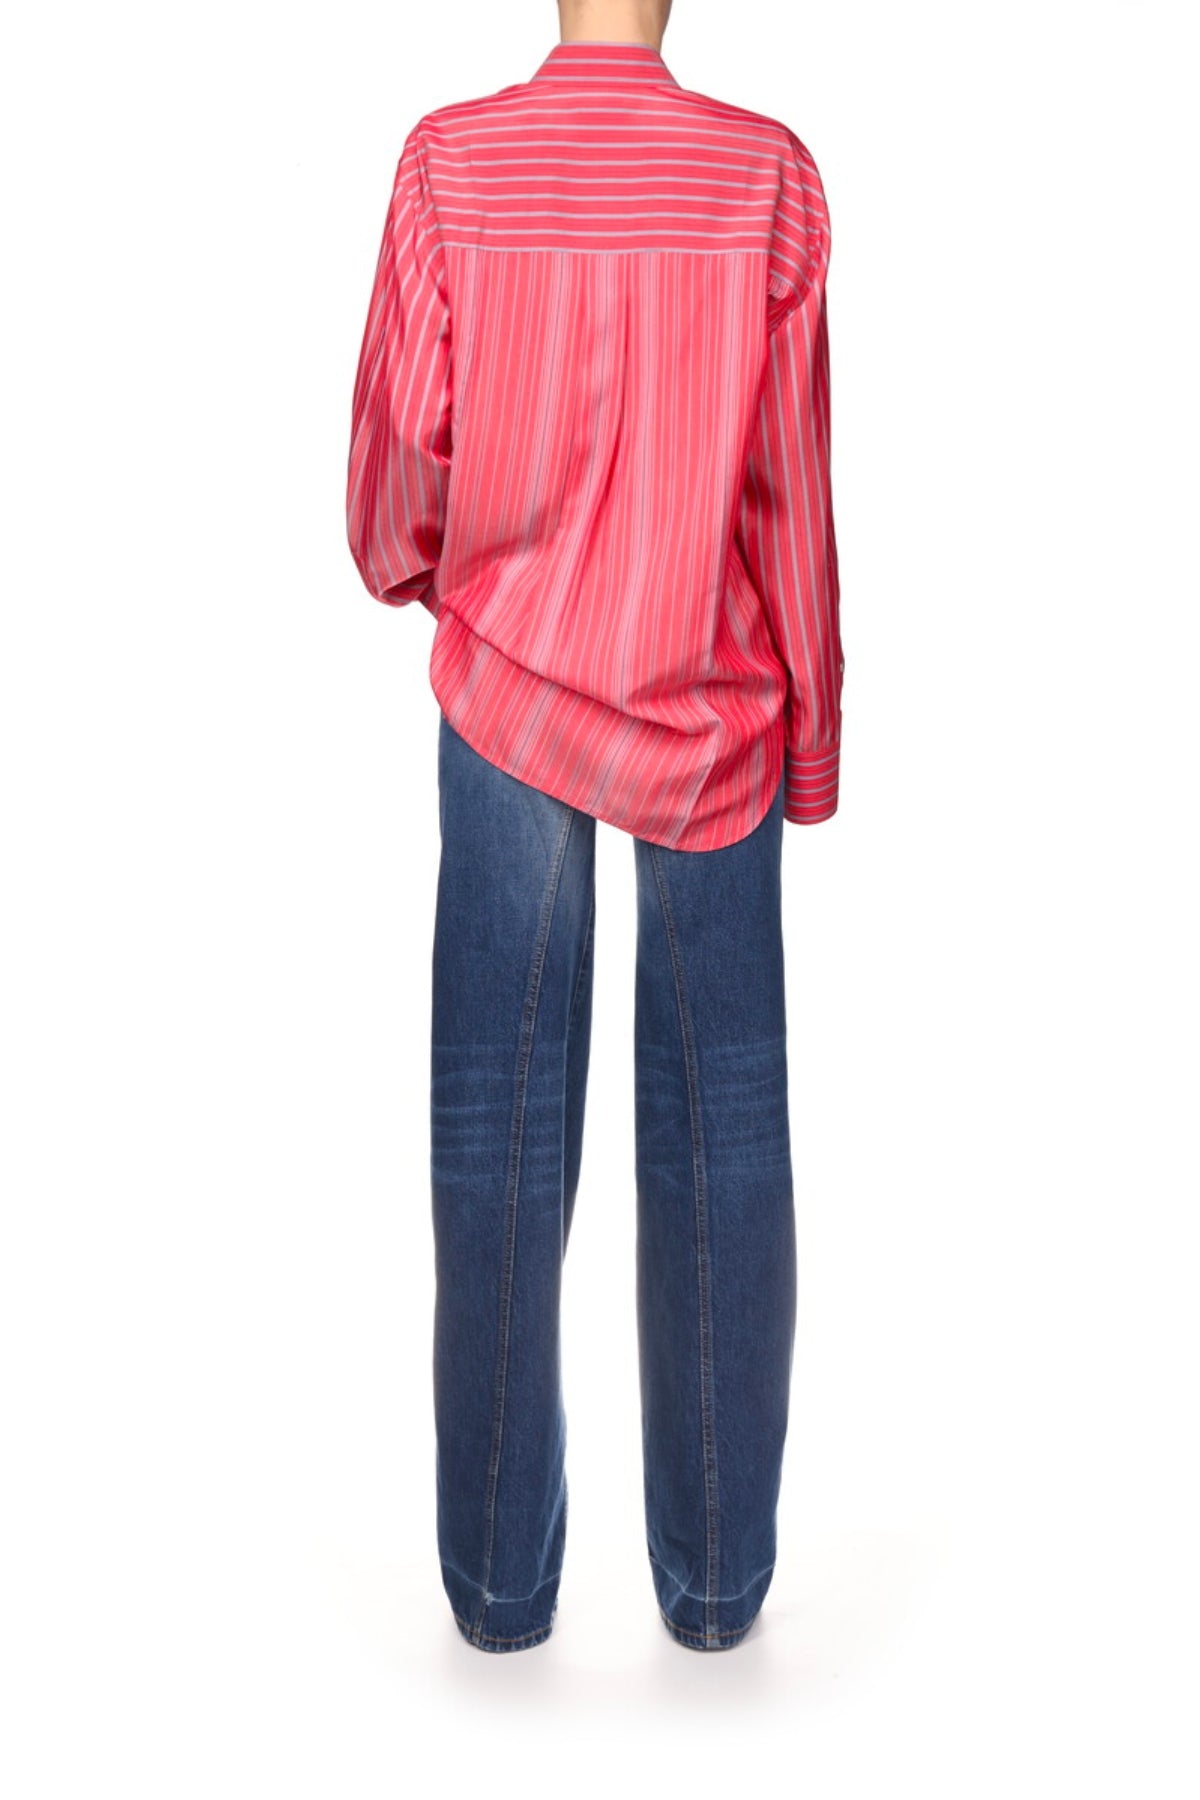 Victoria Beckham Cuff Detail Oversized Shirt - Chilli/ Dark Red/ Powder Blue